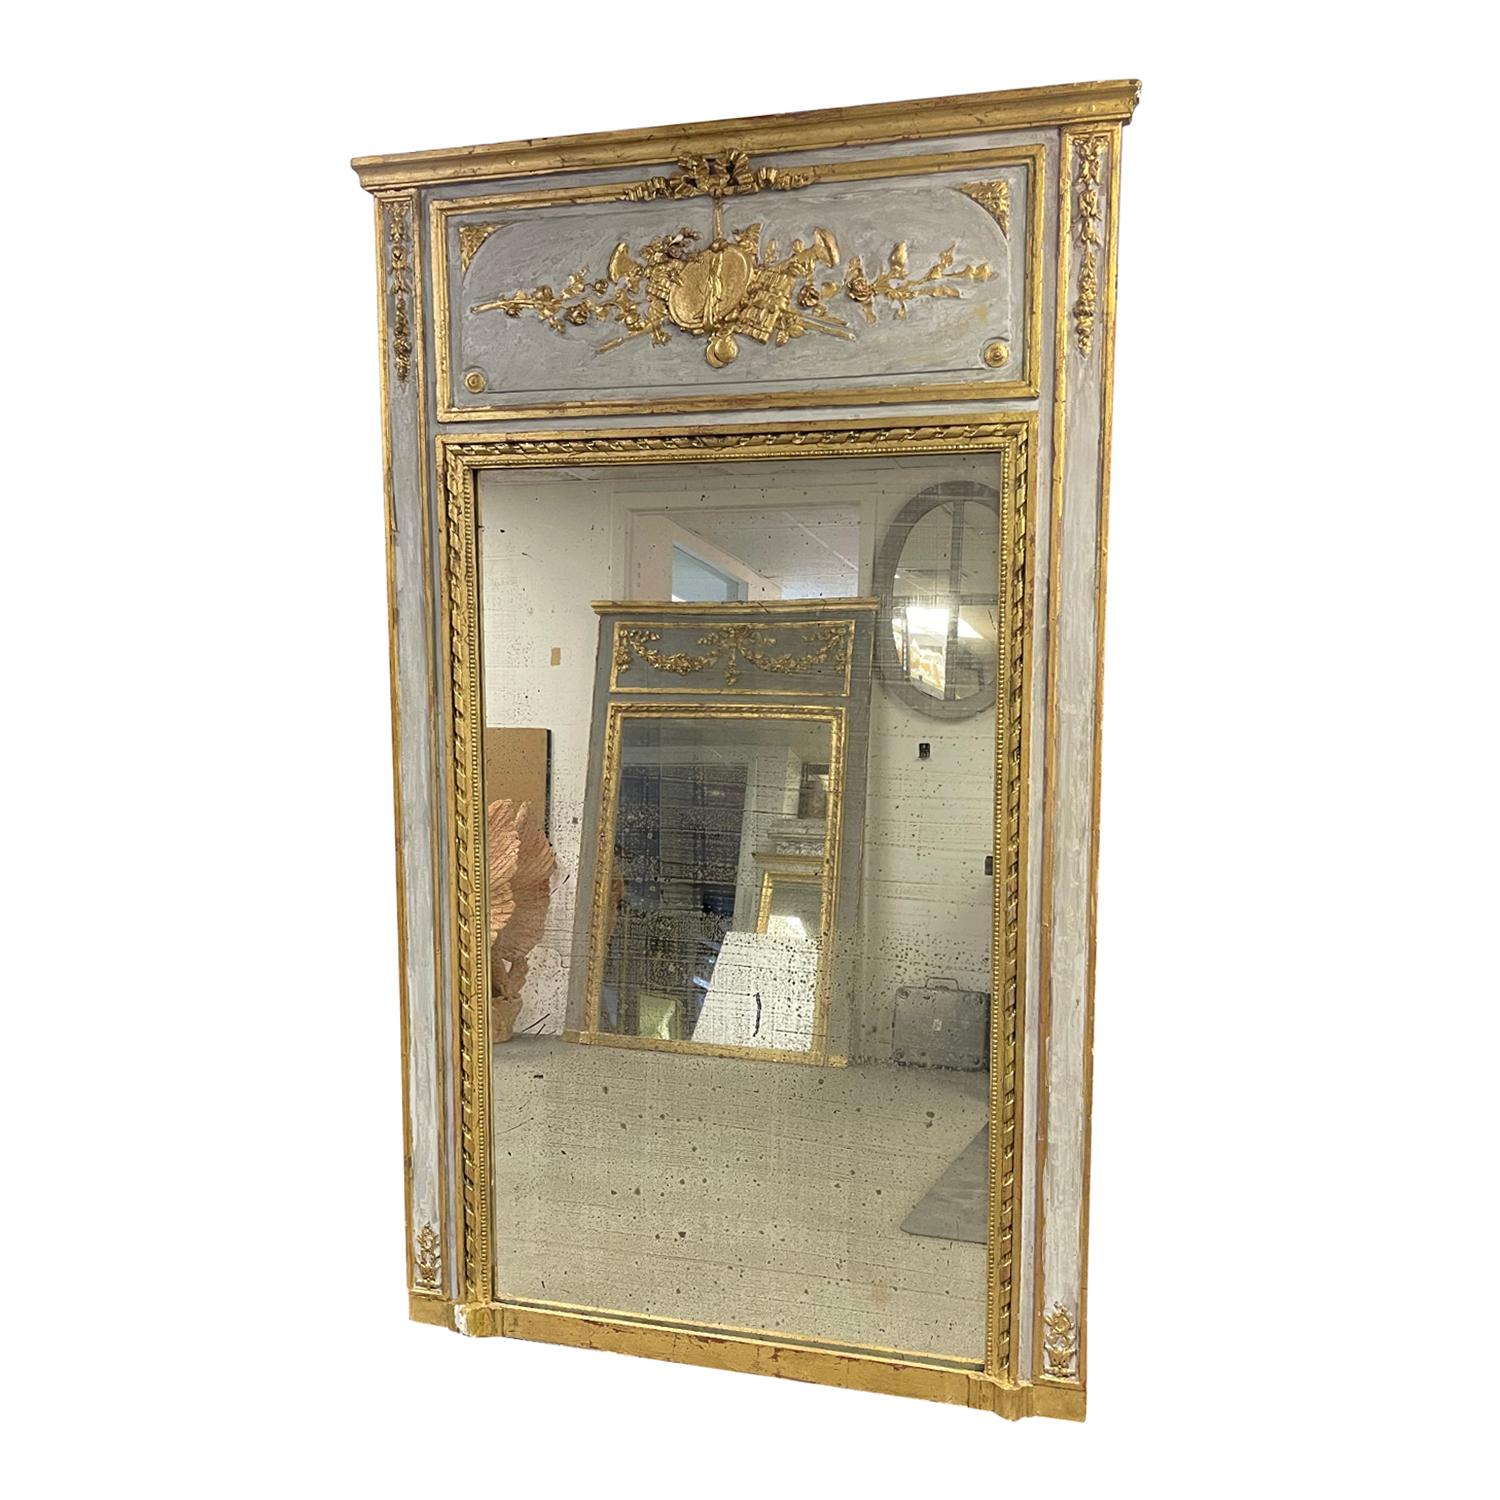 Miroir Trumeau typique du XIXe siècle, partiellement sculpté et doré, en bon état. Le miroir de sol antique est constitué de sa glace d'origine. Le dessus du panneau a été richement orné de sculptures méticuleuses selon la technique du XVIIIe